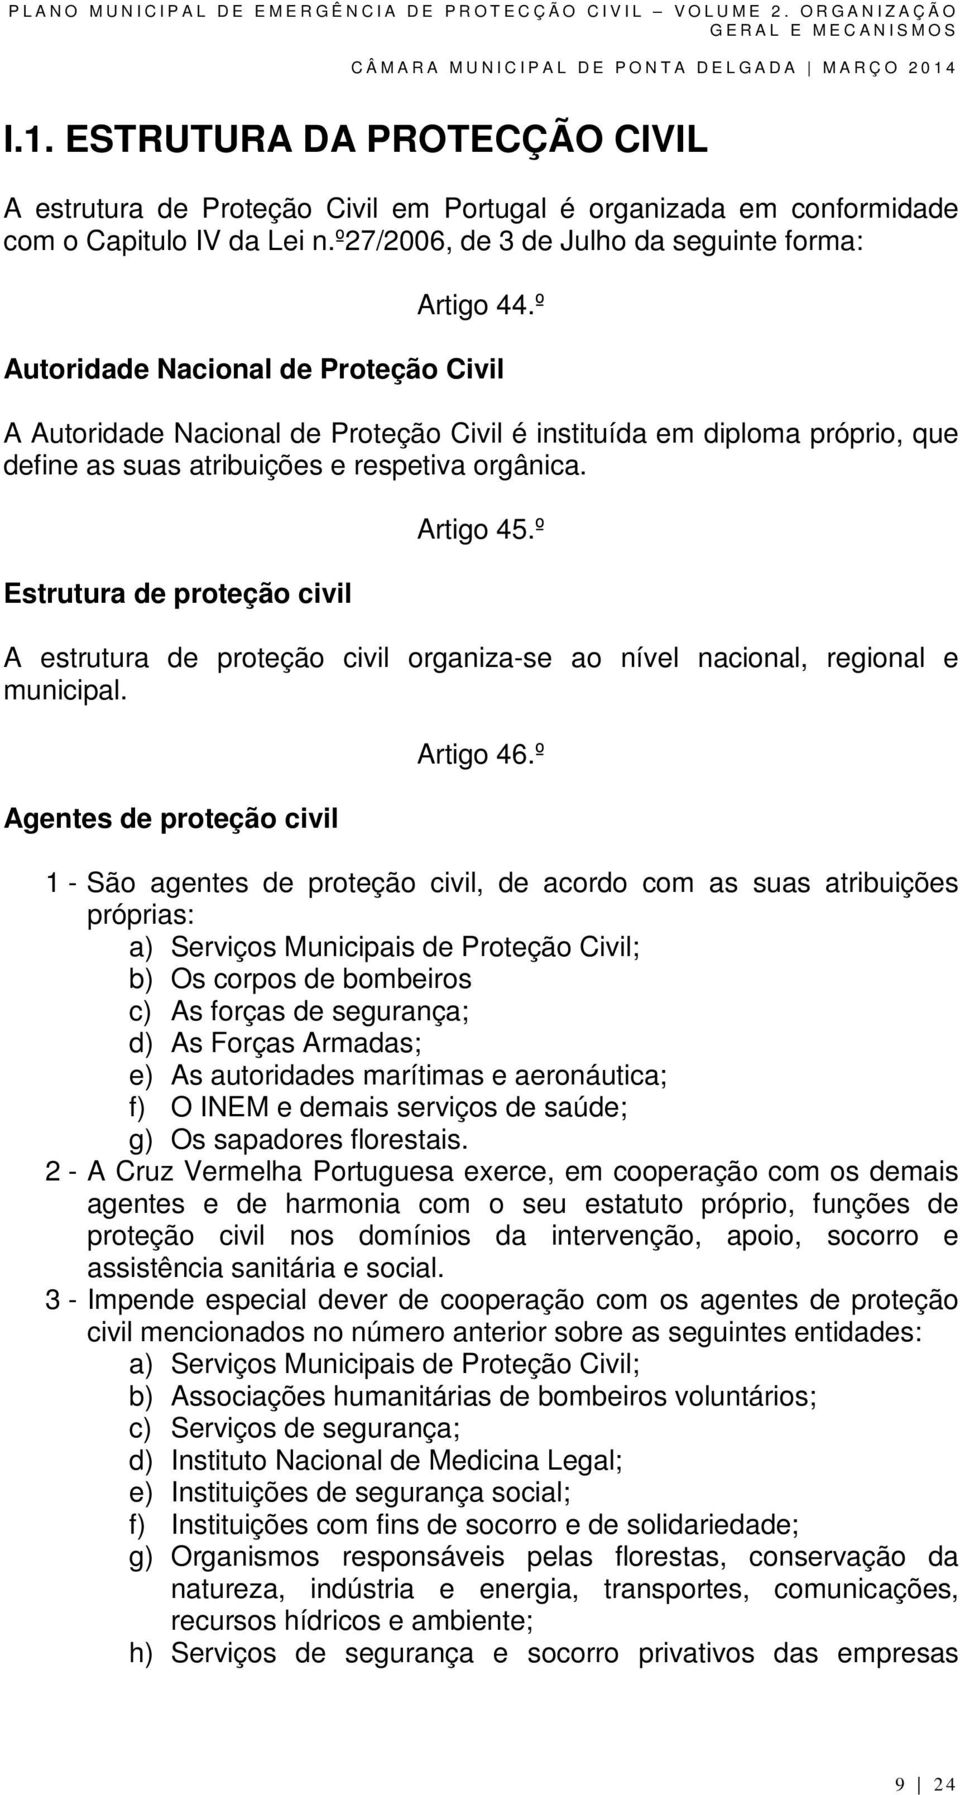 Estrutura de proteção civil Artigo 45.º A estrutura de proteção civil organiza-se ao nível nacional, regional e municipal. Agentes de proteção civil Artigo 46.